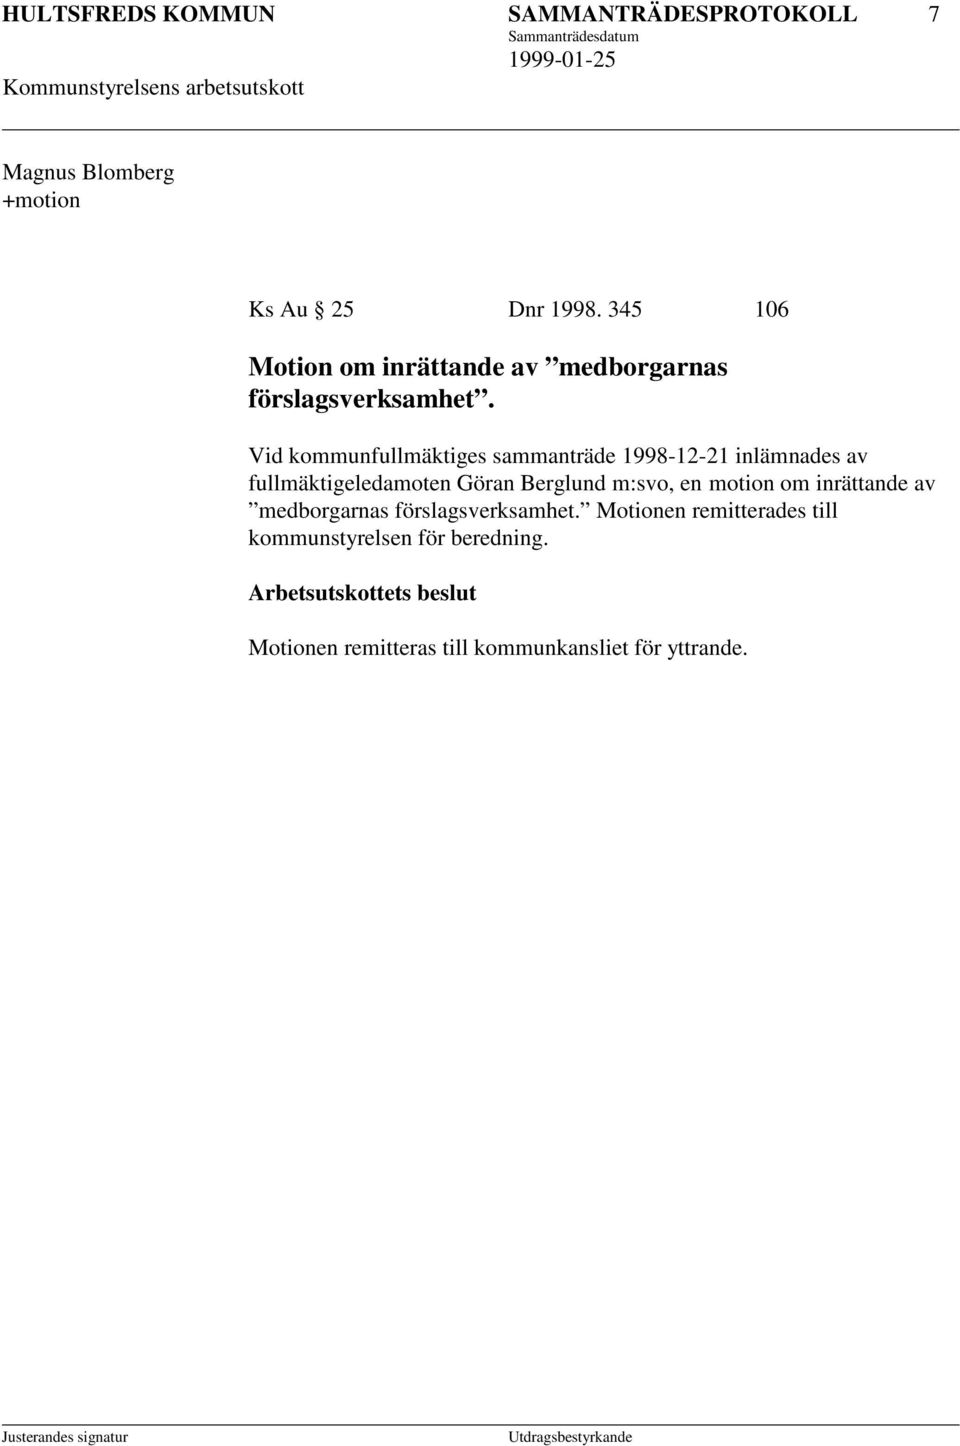 Vid kommunfullmäktiges sammanträde 1998-12-21 inlämnades av fullmäktigeledamoten Göran Berglund m:svo, en